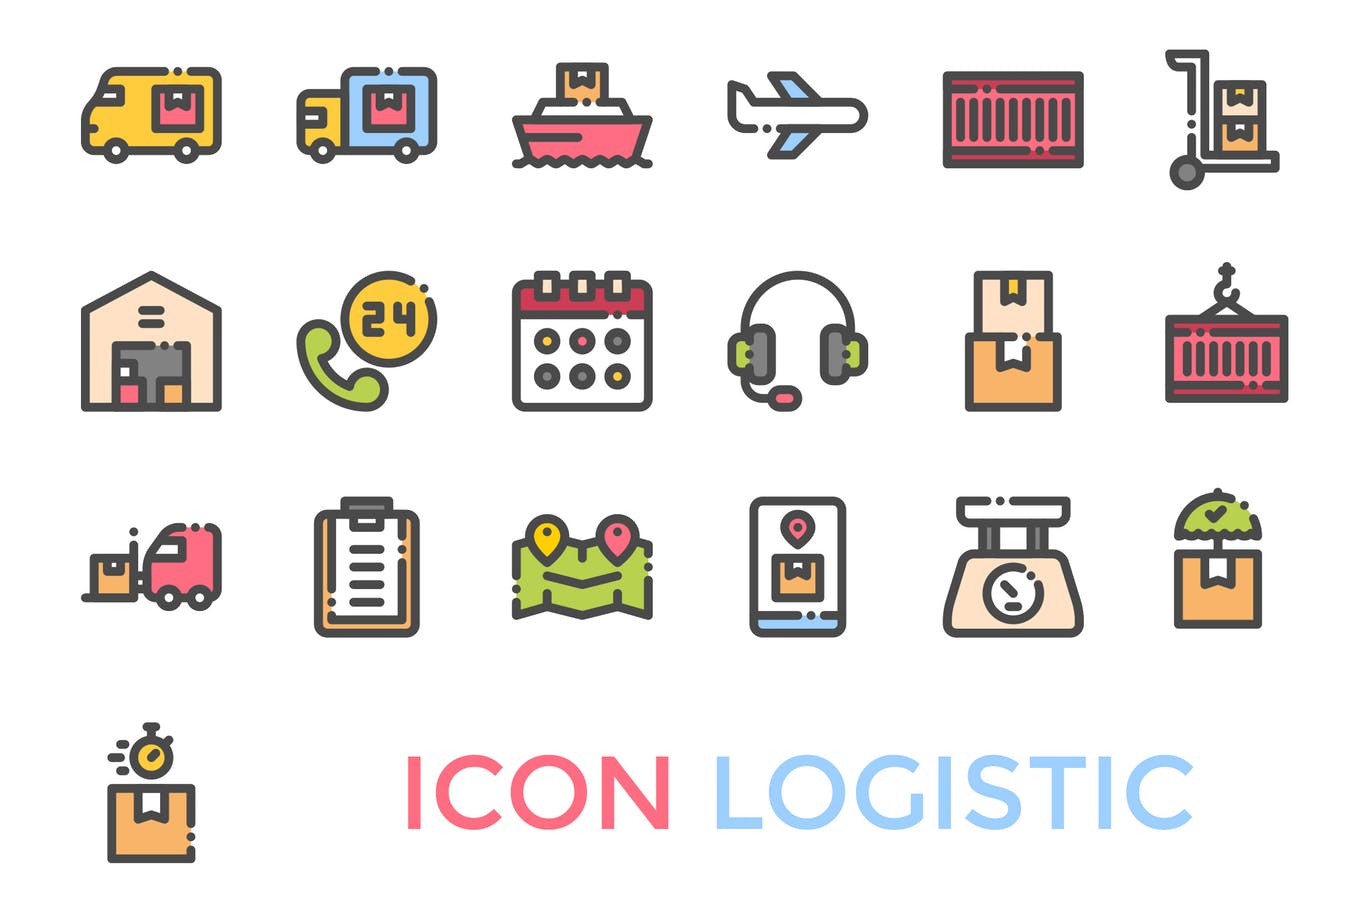 19枚物流配送主题矢量素材库精选图标 Logistics Icon插图